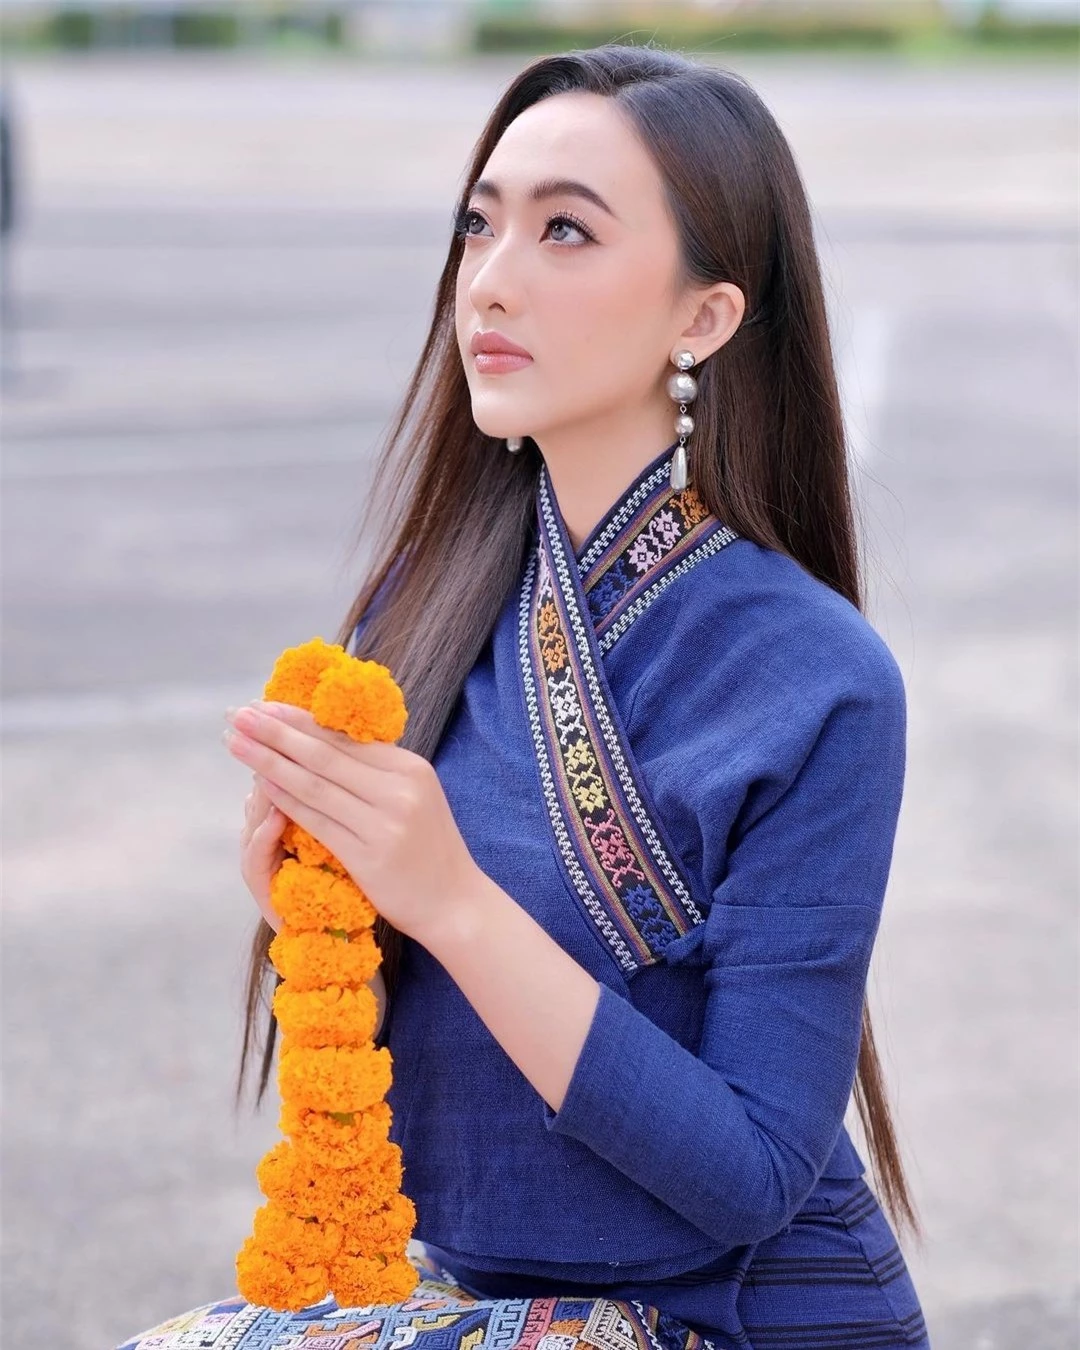 Nhan sắc đời thường người đẹp Lào sang Việt Nam thi hoa hậu ảnh 11